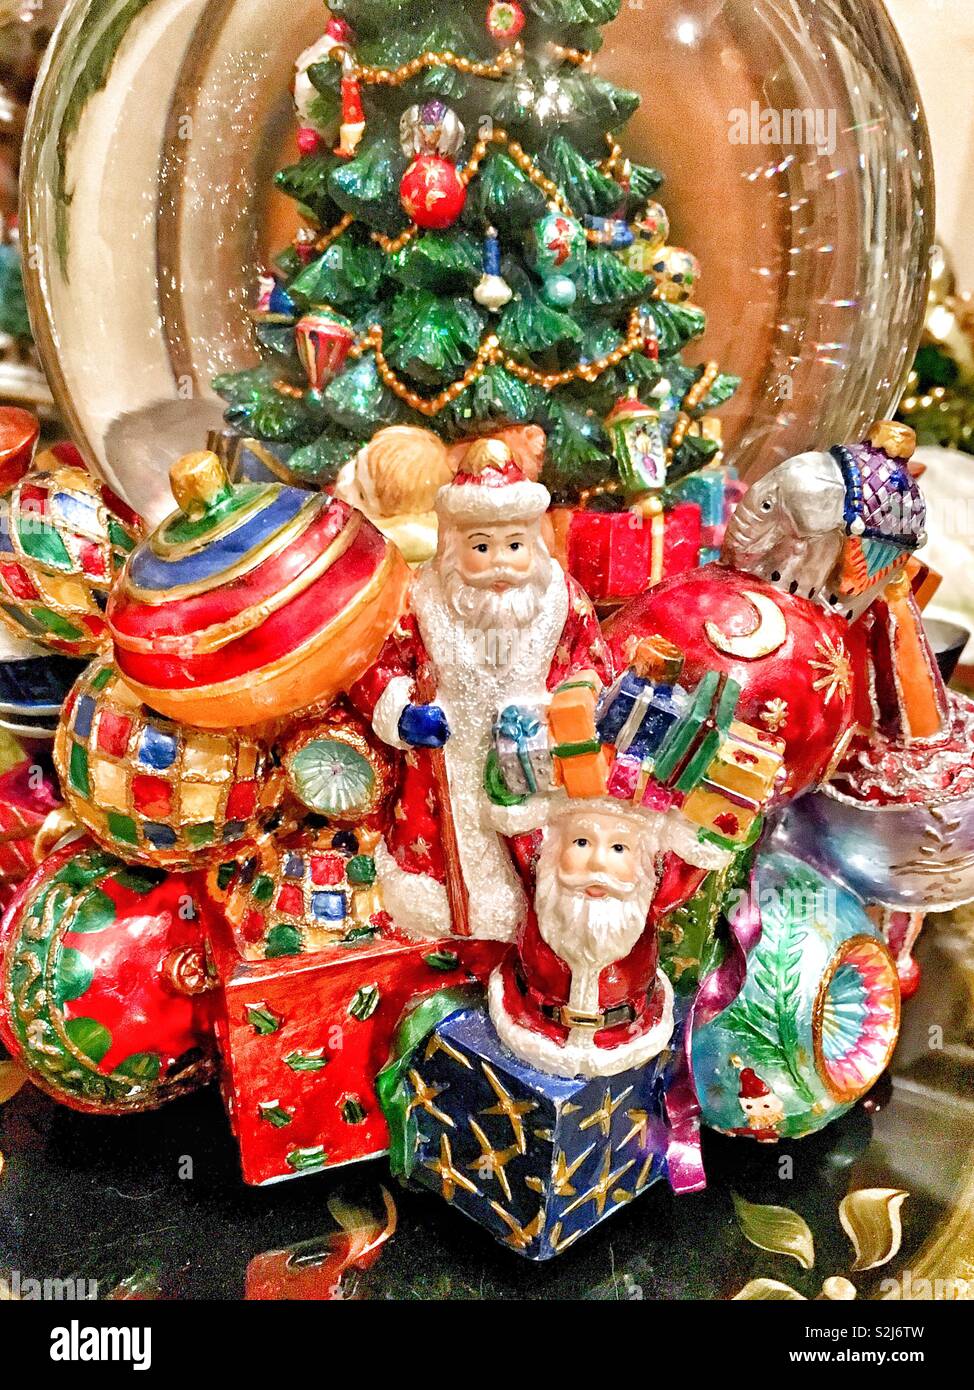 Snow globe avec l'arbre de Noël décoré et Santa figurines détenant plusieurs présente entouré d'ornements de Noël géant Banque D'Images